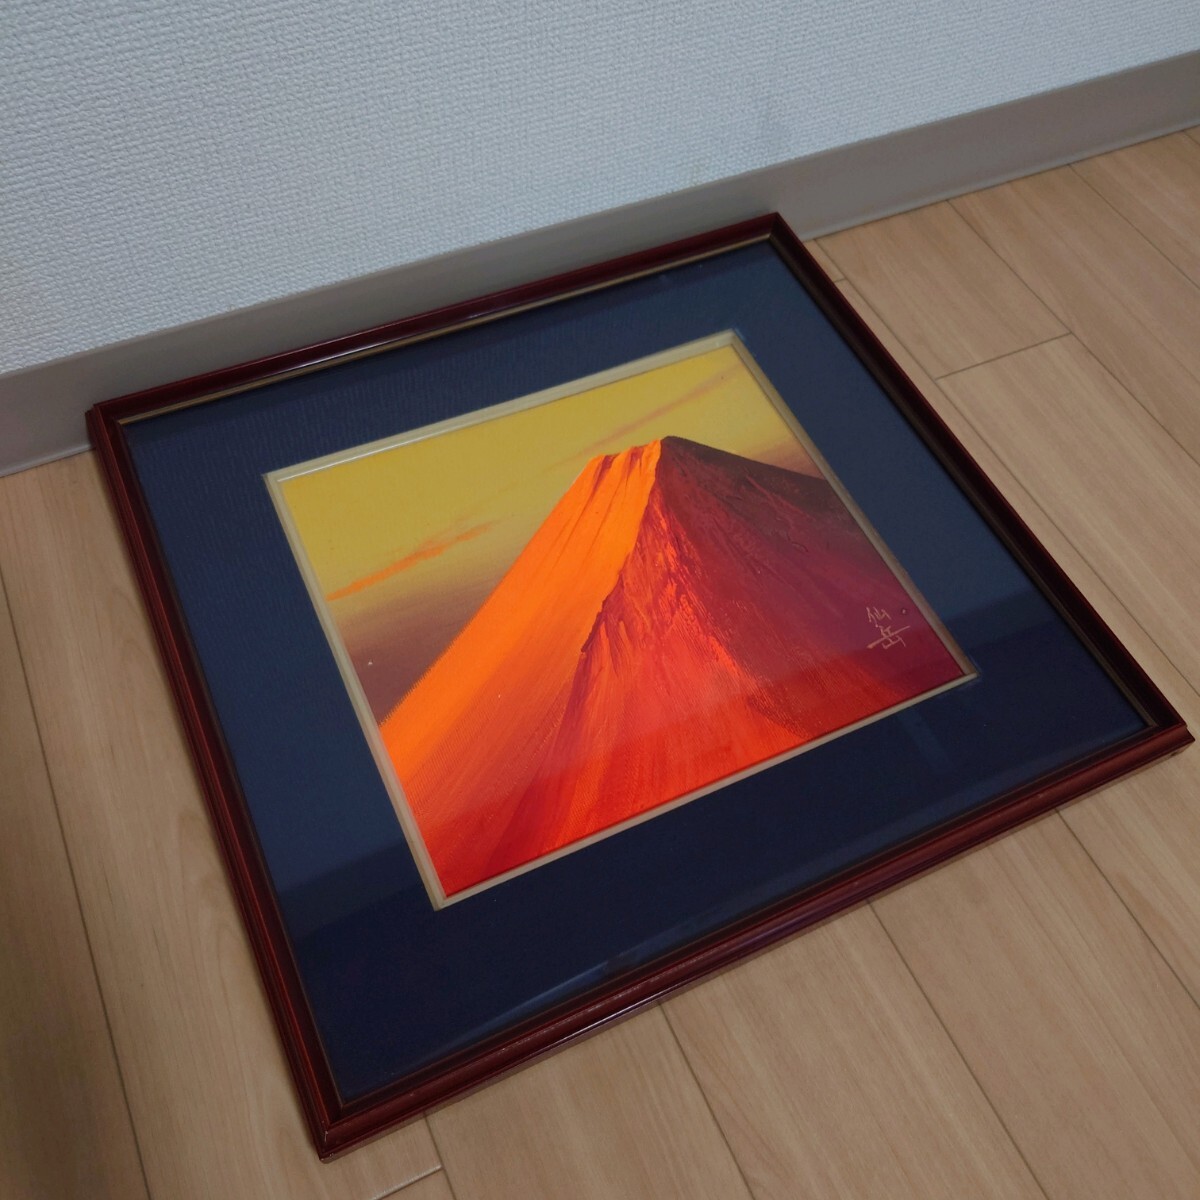 À partir de 1 yen Mt. Sengaku Mt. Fuji Peinture à l’huile Fine Art Painting Paysage Peinture Rouge Mt. Fuji Encadré Peinture japonaise Art, peinture, peinture à l'huile, Nature, Peinture de paysage